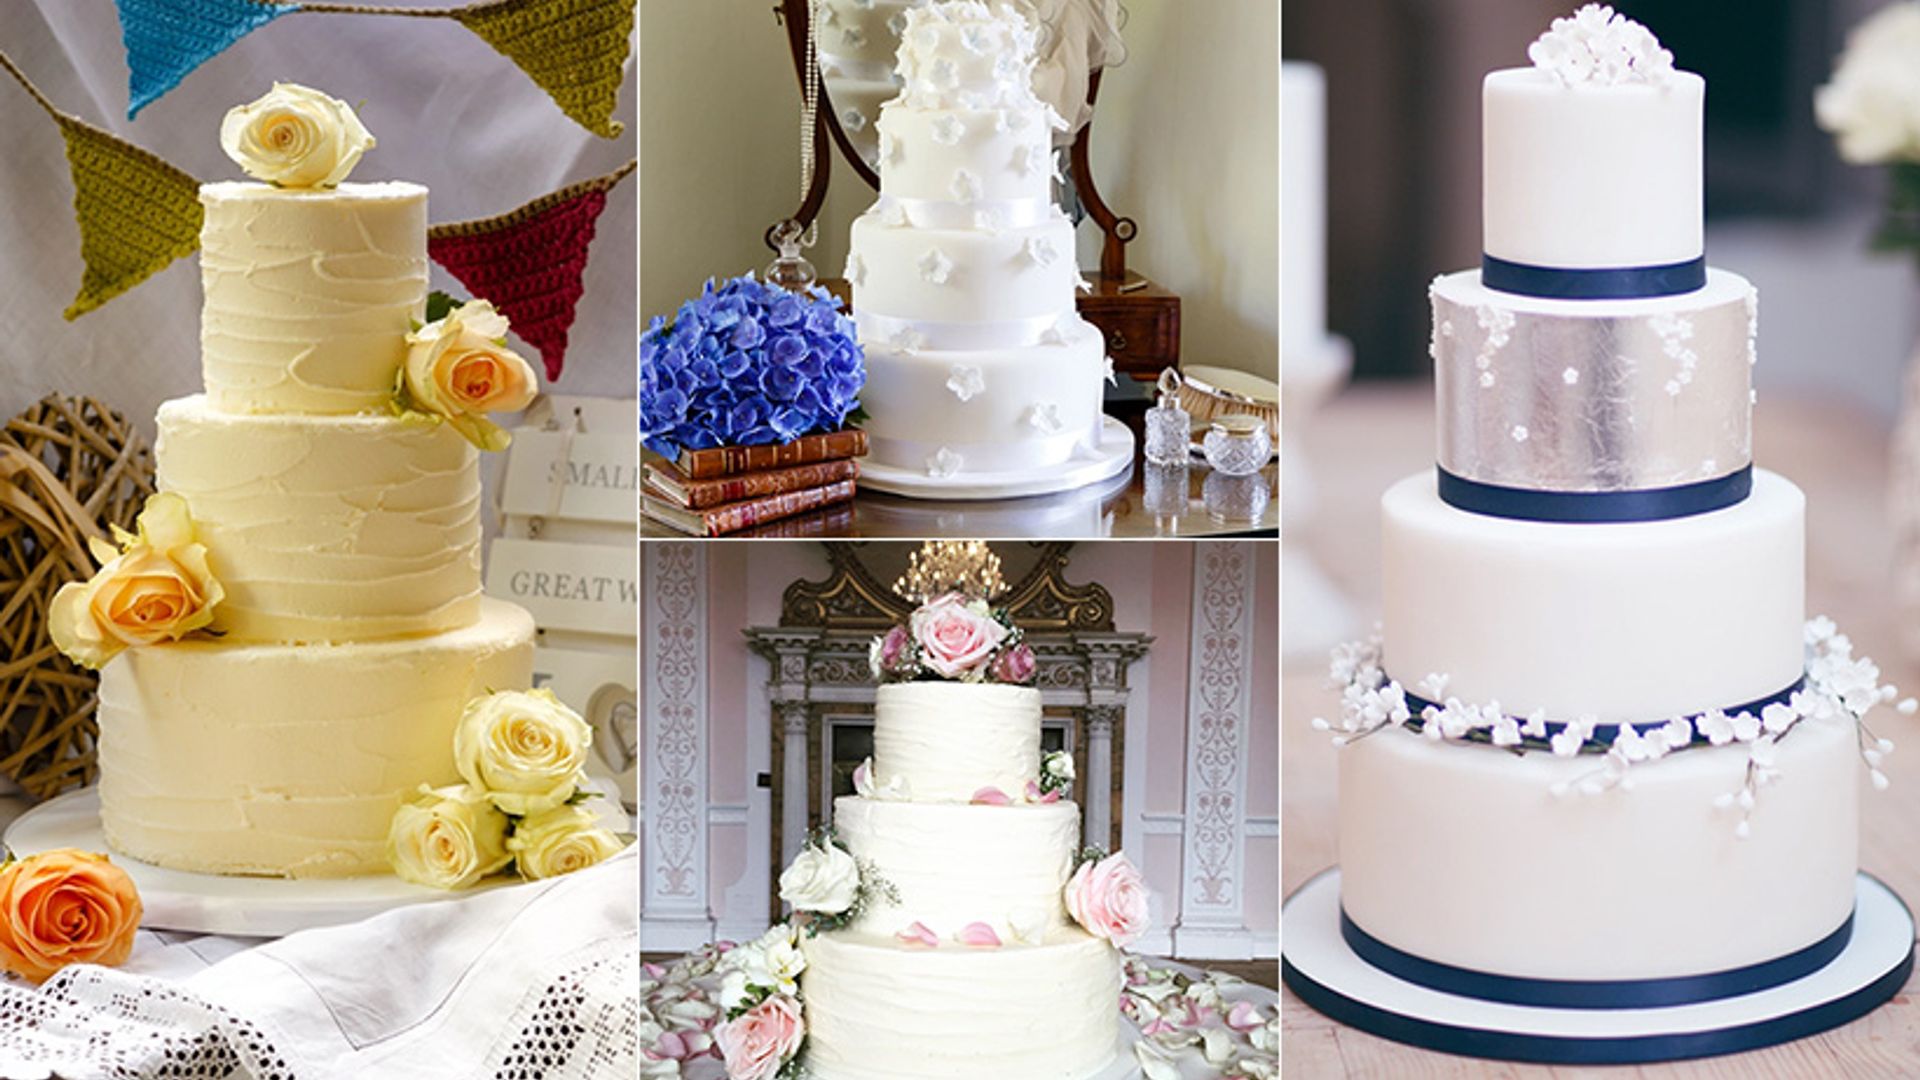 Engagement Cake - Denny & Ying by Lareia Cake & Co. | Bridestory.com